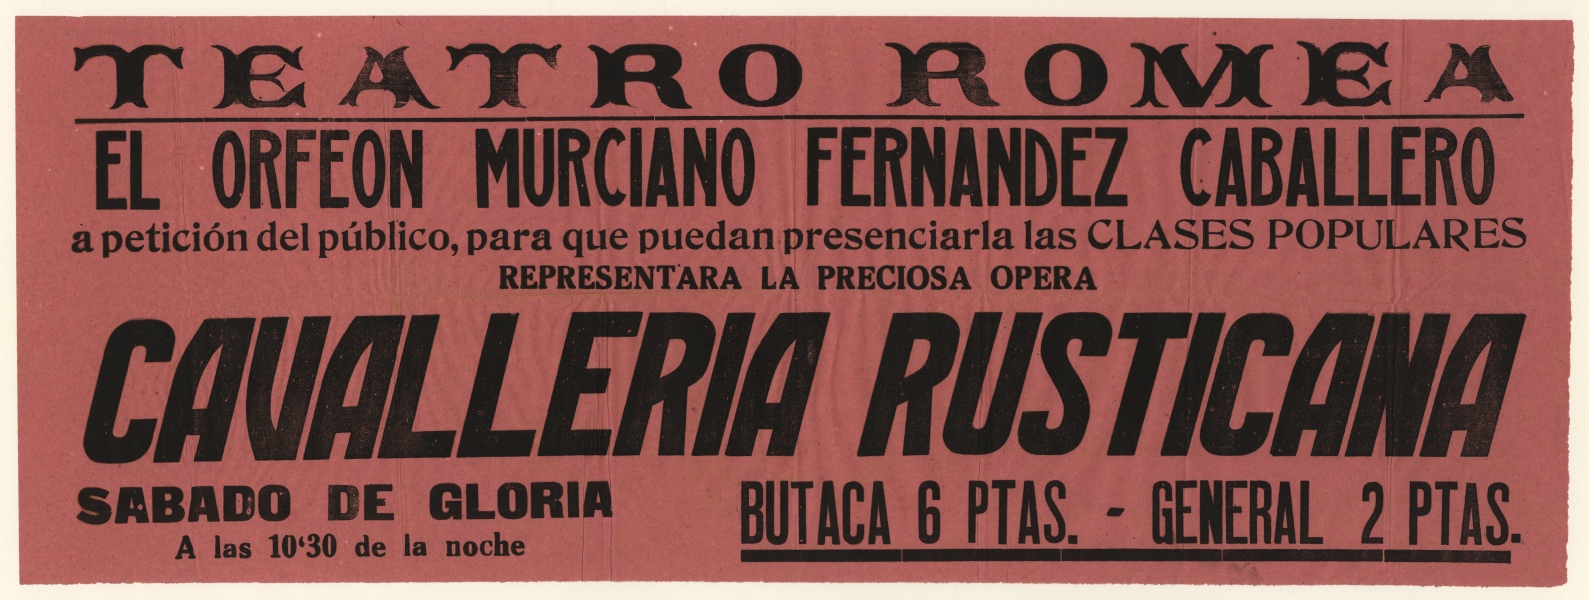 Cartel del Concierto del Orfeón Murciano Fernández Caballero celebrado en el Teatro Romea de Murcia.